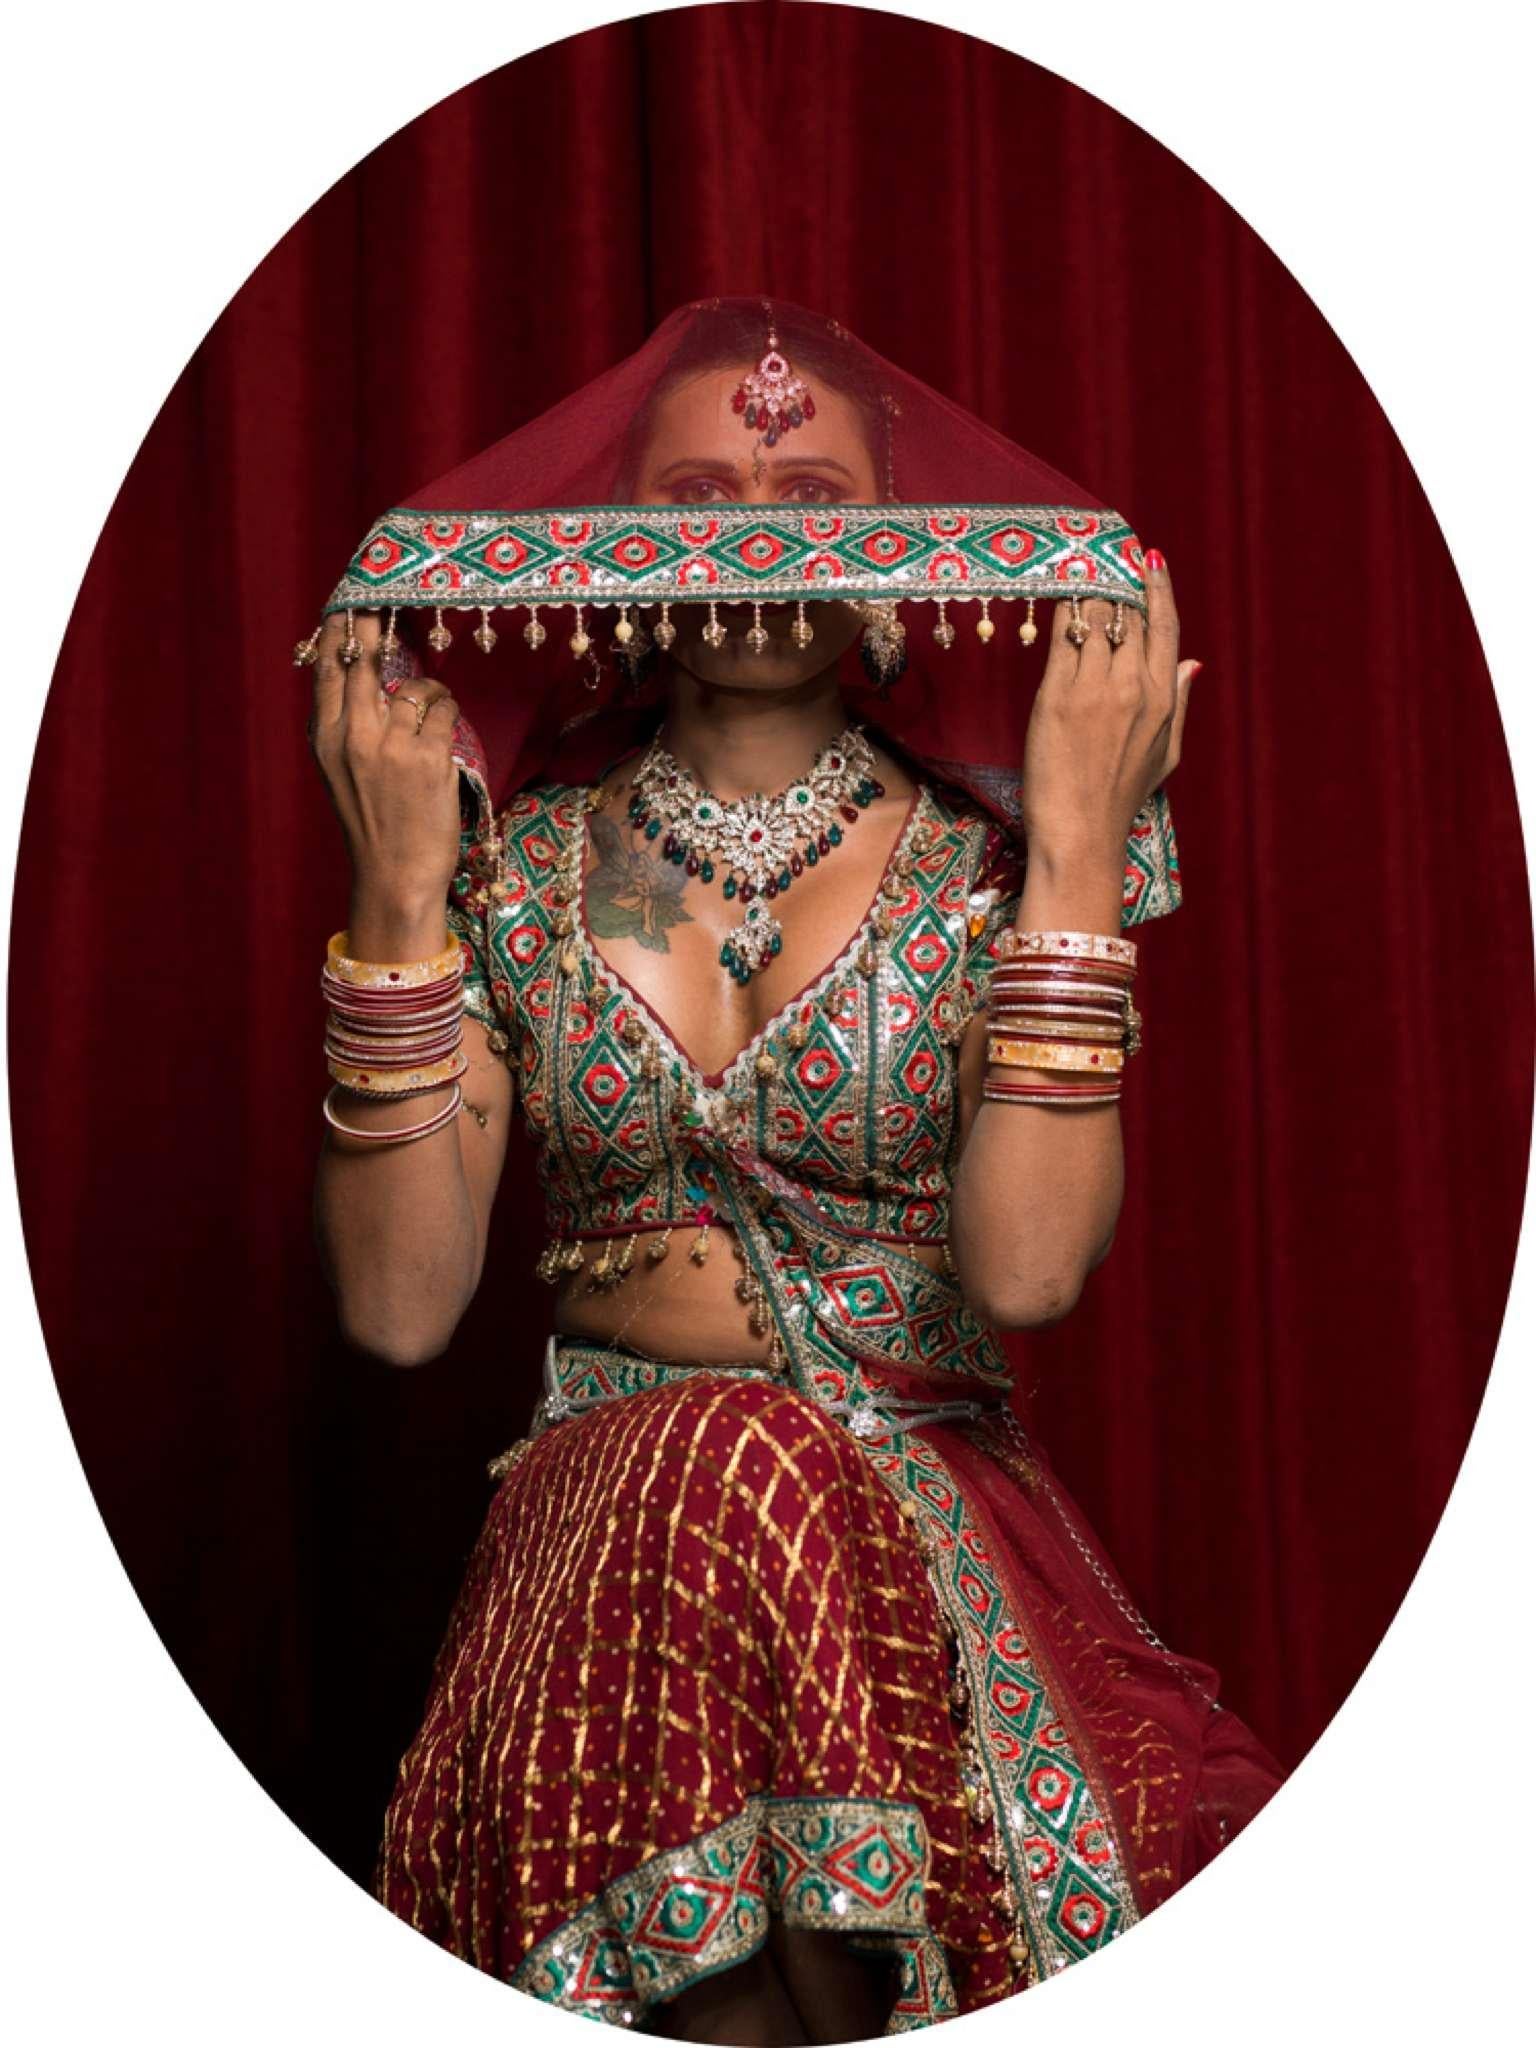 Harsha und Sneha, Porträts. Aus der Serie The Third Gender of India  – Photograph von Jill Peters